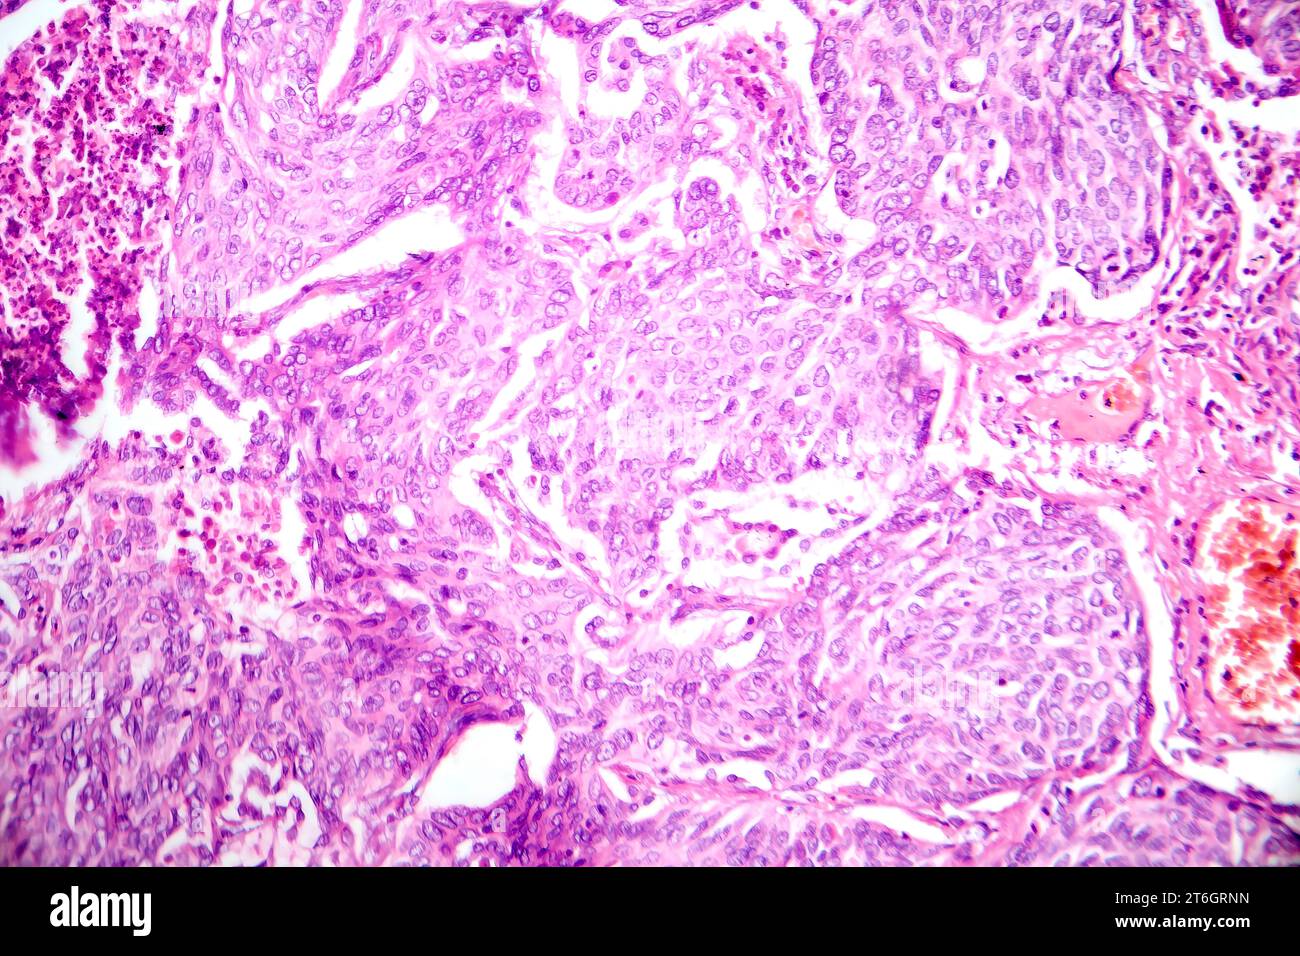 Fotomicrografia dell'adenocarcinoma polmonare, che illustra le cellule ghiandolari maligne caratteristiche del tipo più comune di cancro polmonare. Foto Stock